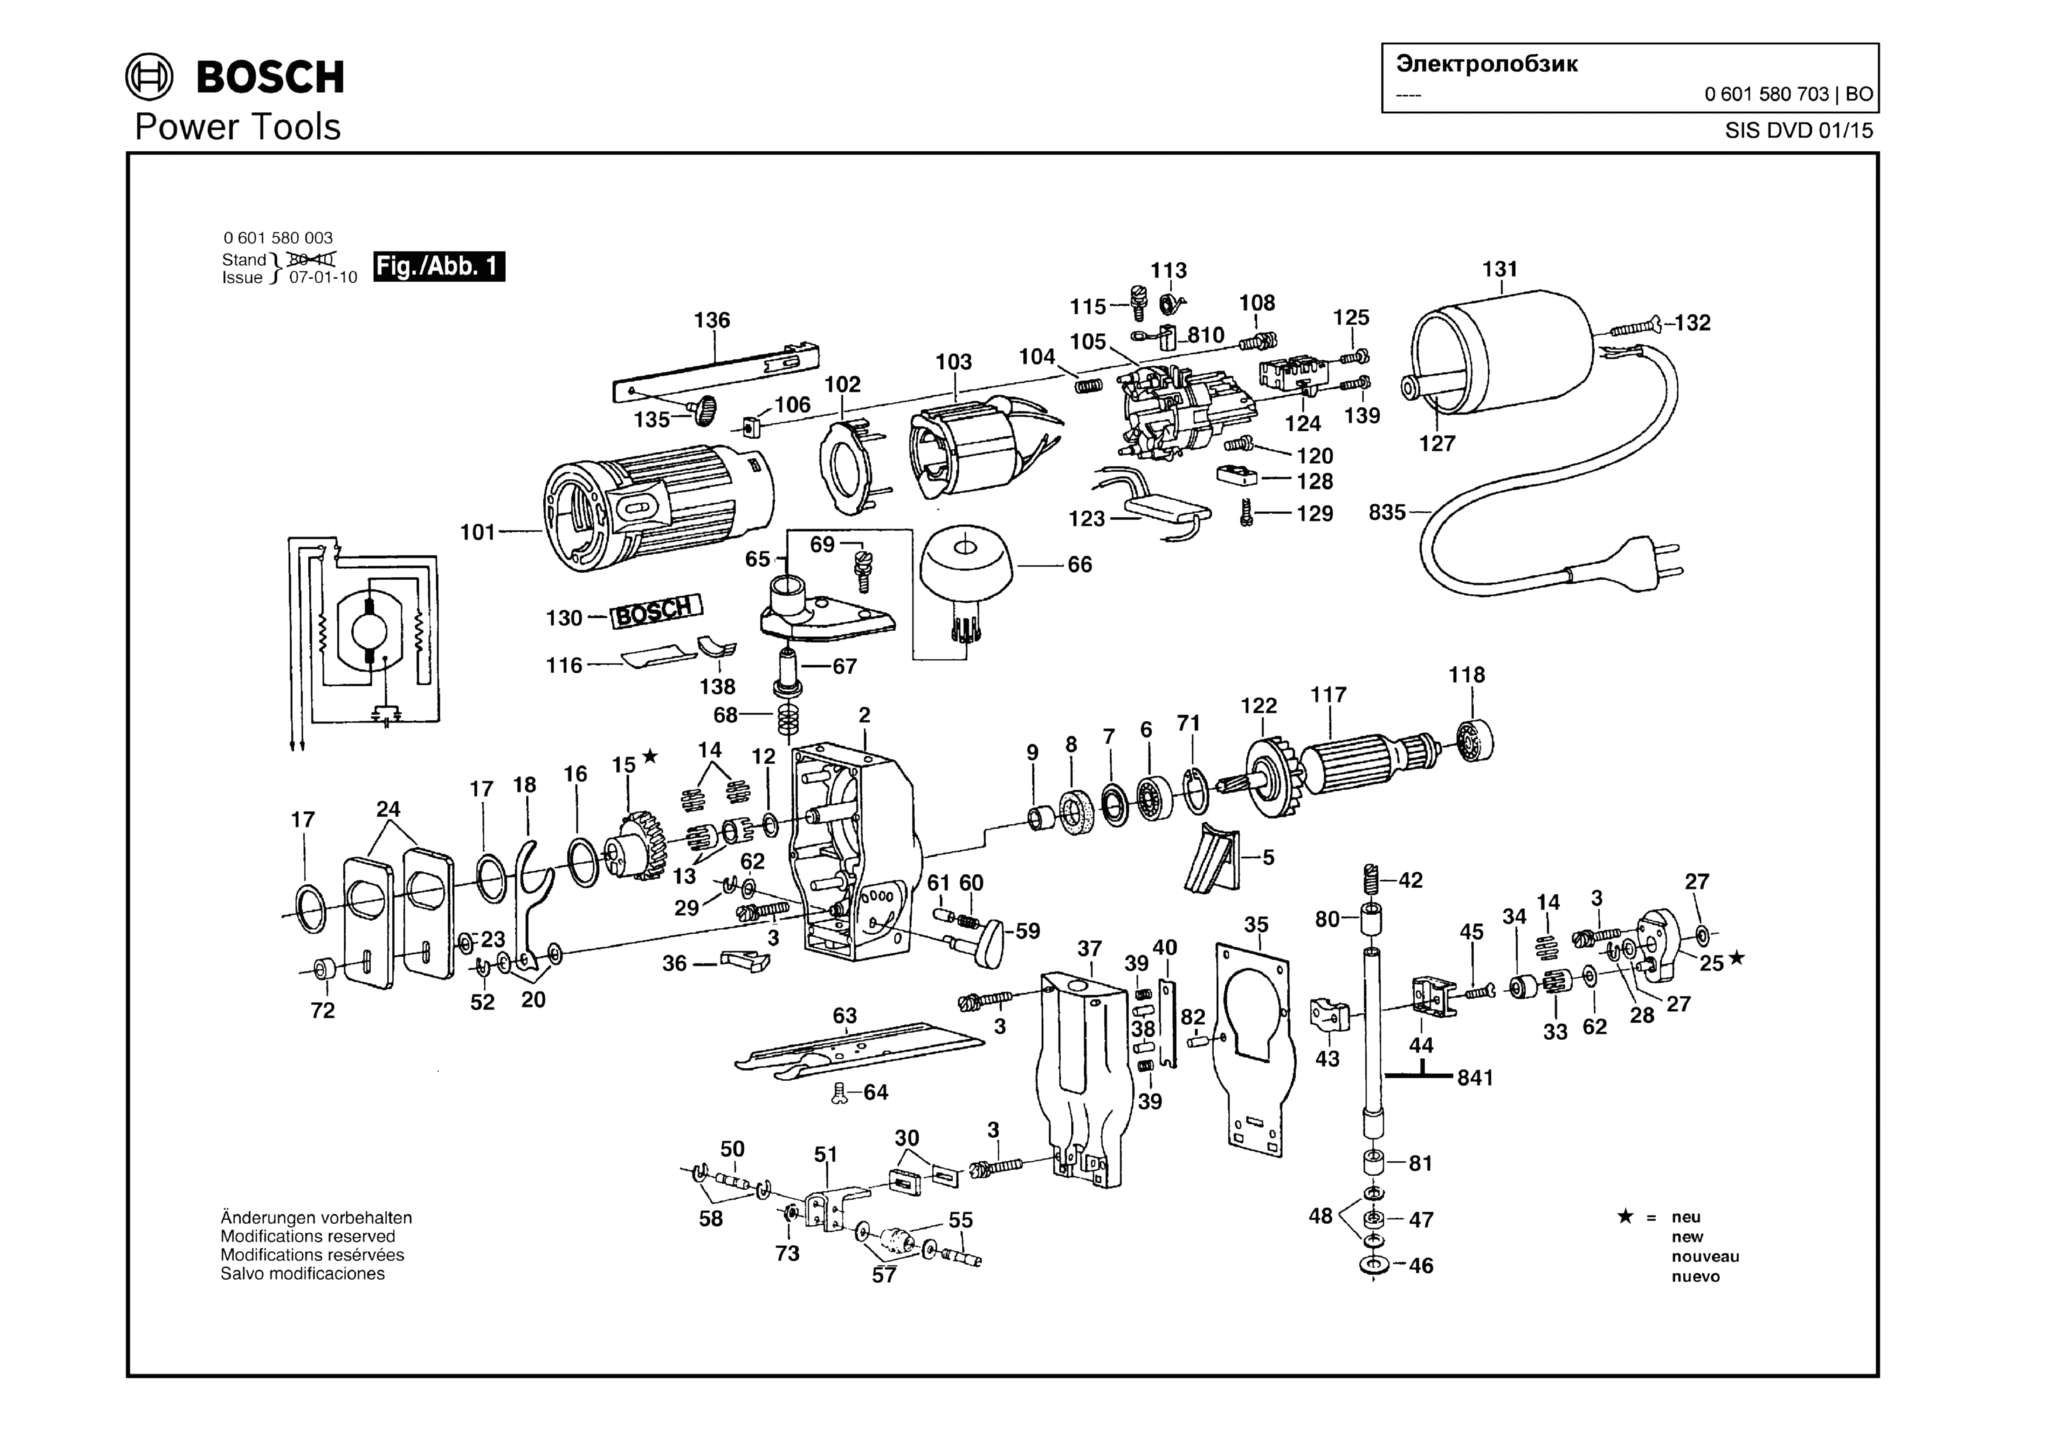 Запчасти, схема и деталировка Bosch (ТИП 0601580703)